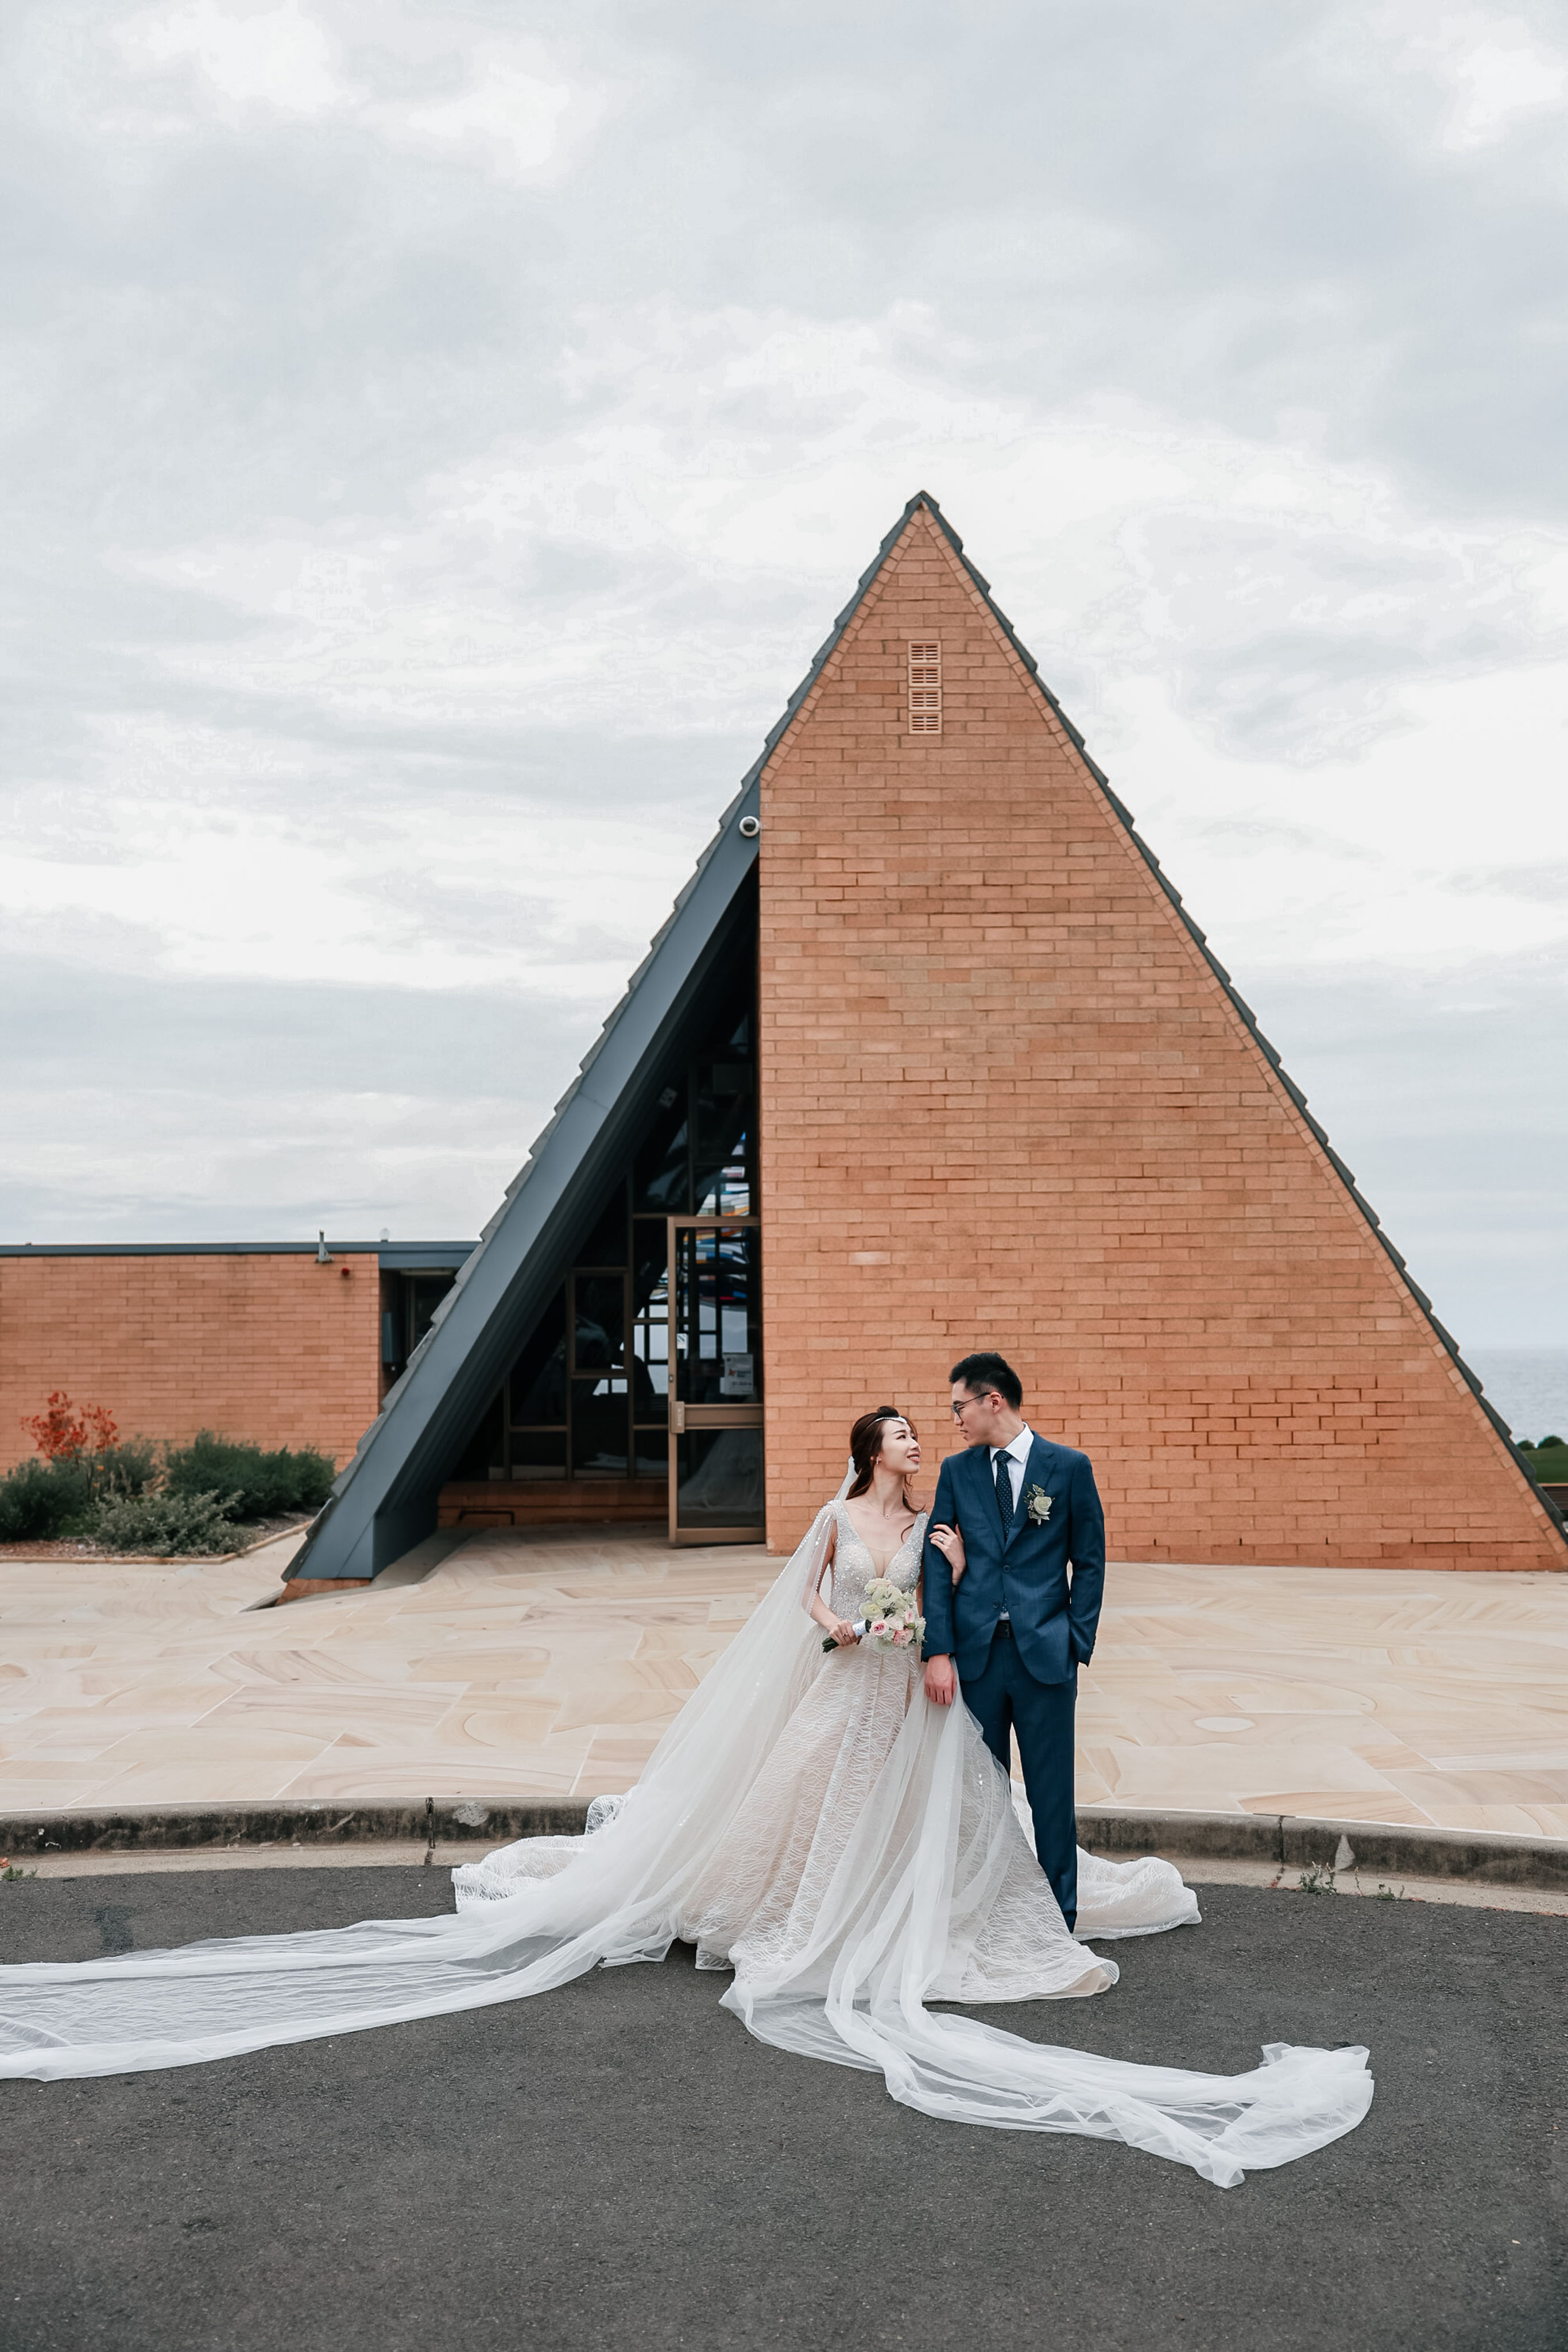 悉尼顶尖婚纱婚礼摄影|婚礼摄像|婚礼布置策划|商业广告摄像TVC|房地产广告摄影摄像|视频制作